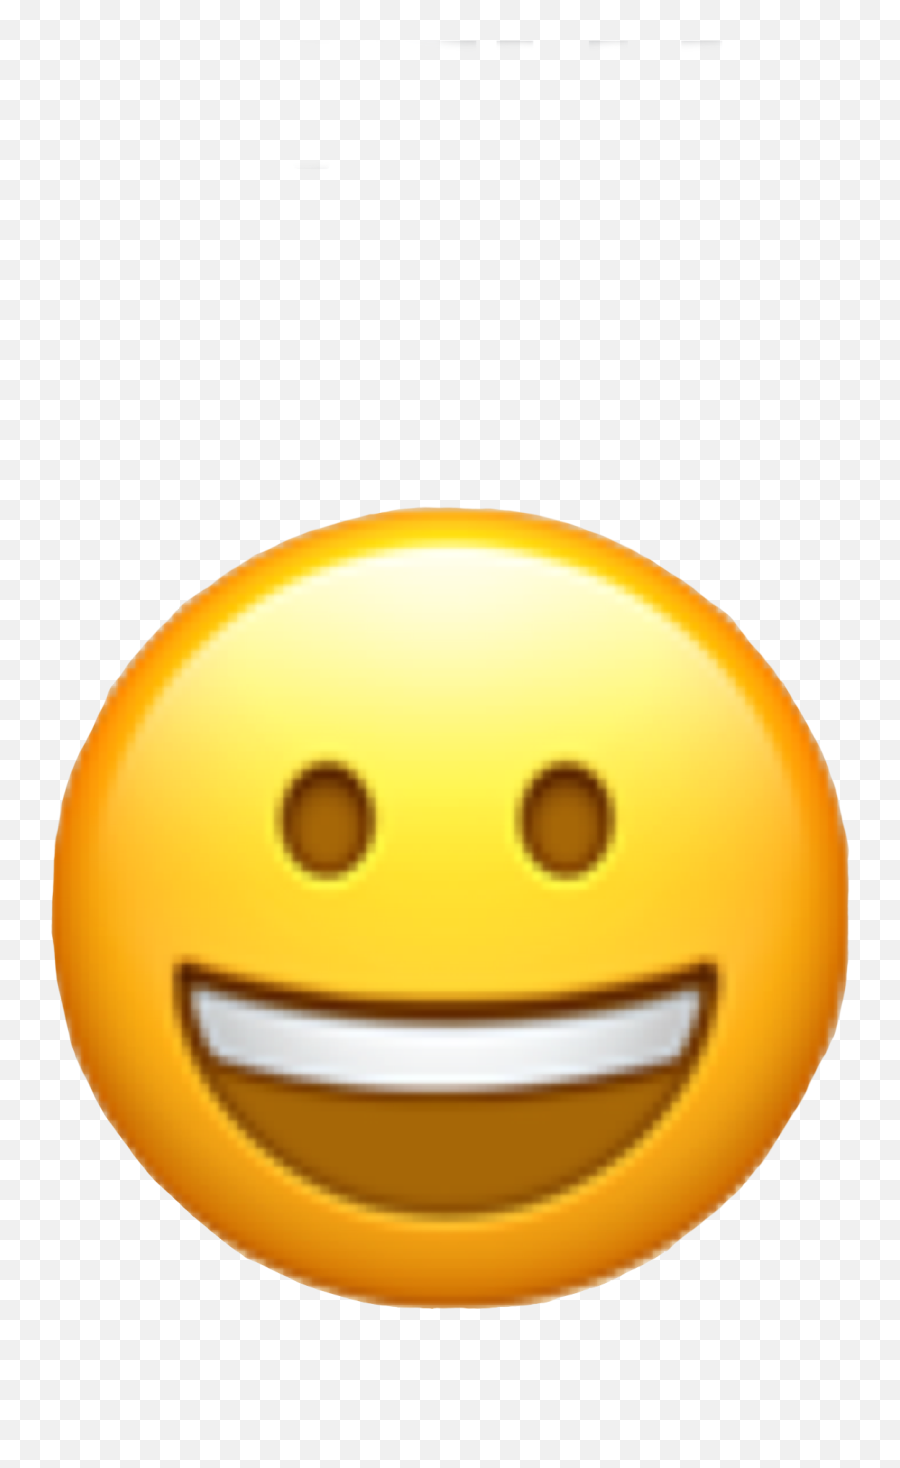 Emoji Emojicon Emote Face Emojiface Happyface Happy Smi - Cute Emoji Stickers Whatsapp,Happy Smiley Face Emoji